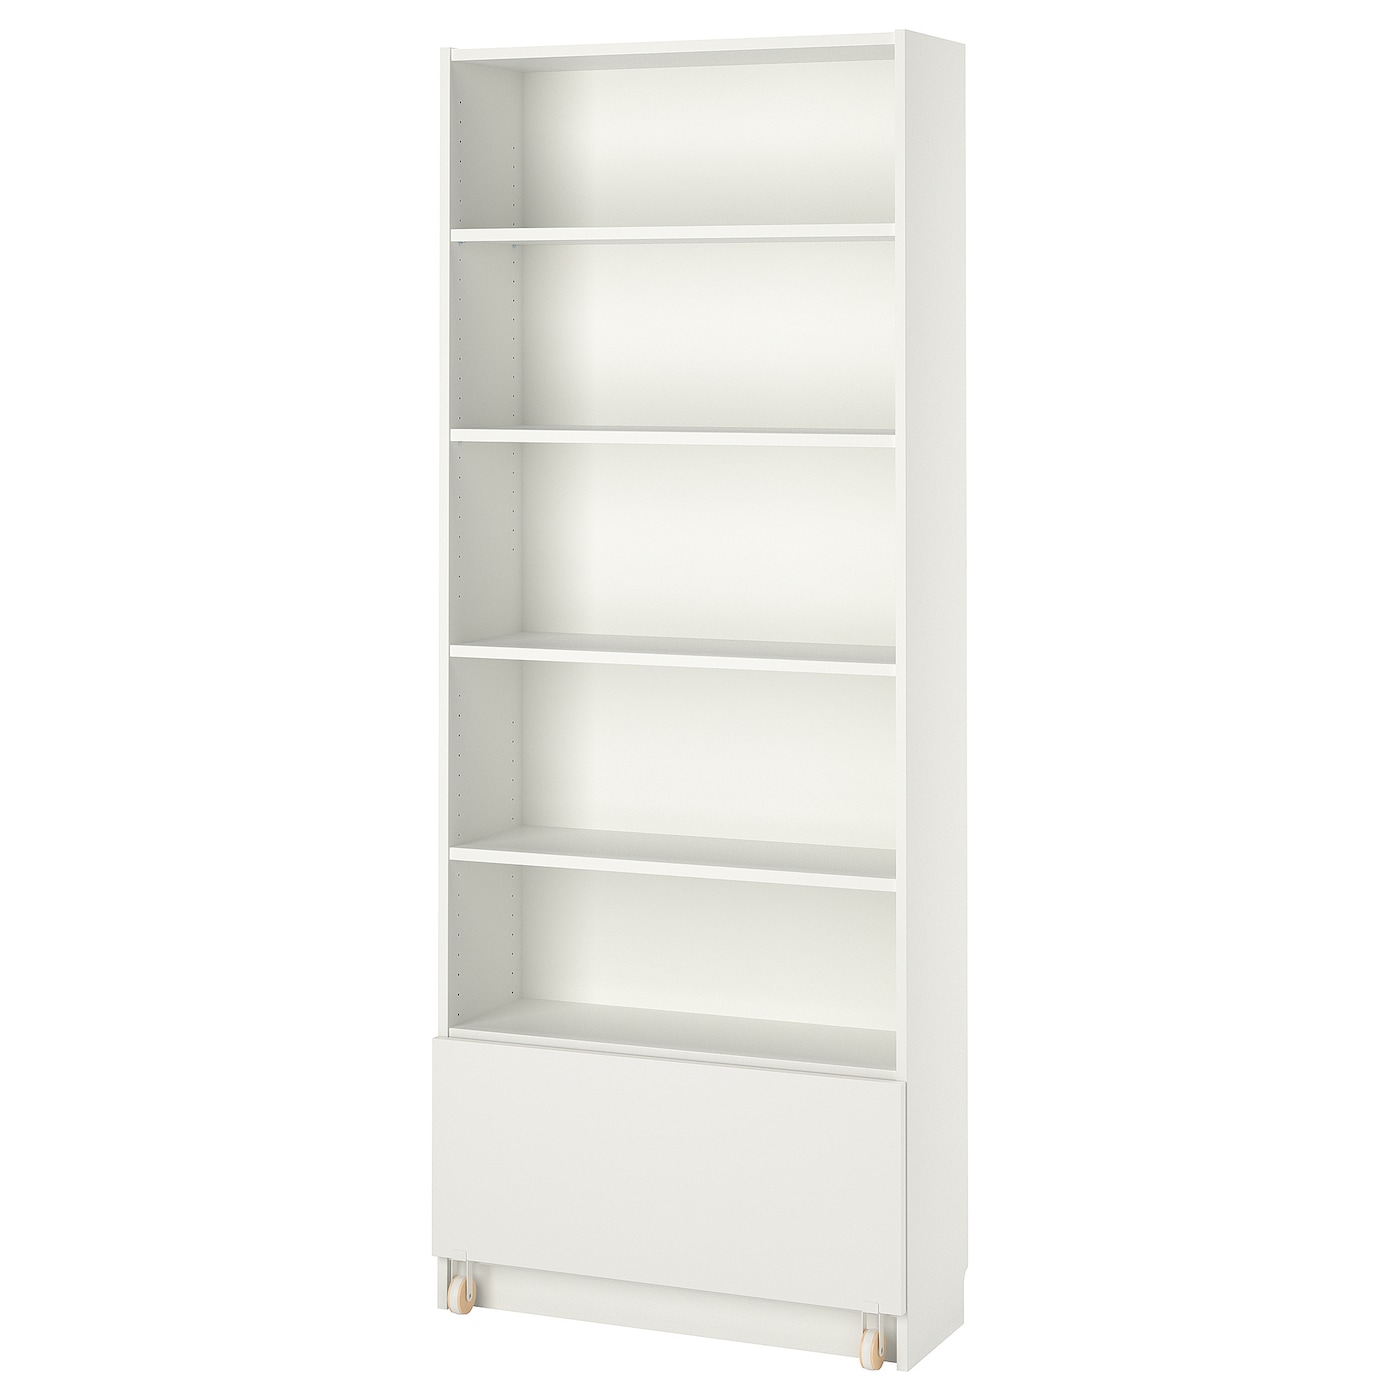 Книжный шкаф с ящиками - BILLY IKEA/БИЛЛИ ИКЕА, 30х80х202 см, белый